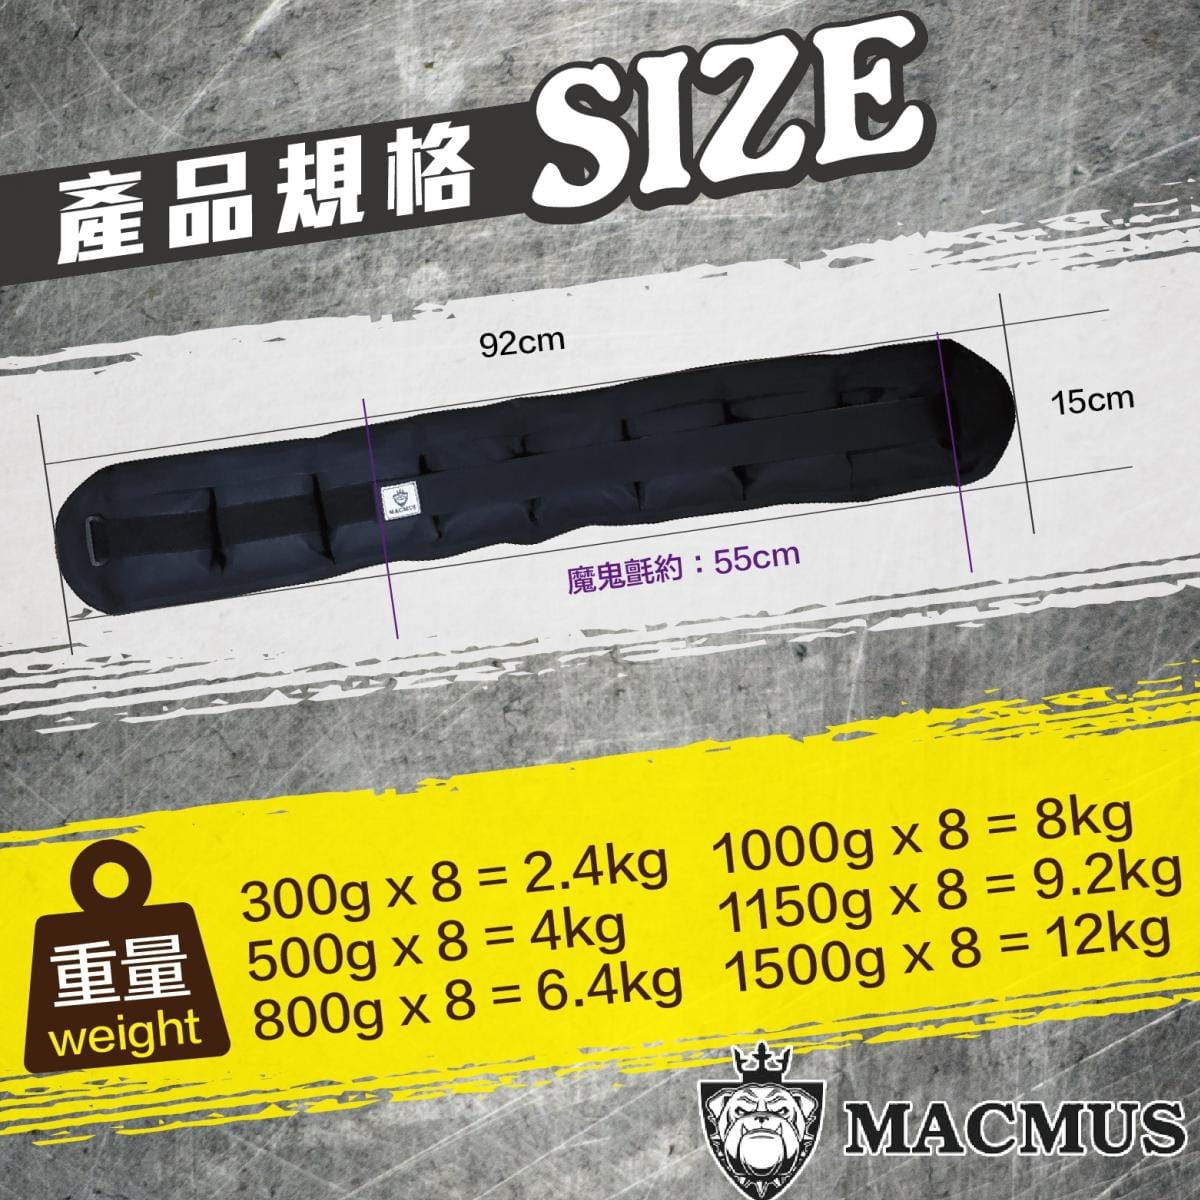 【MACMUS】12公斤負重腰帶｜8格式可調整重訓腰帶｜強化核心肌群鍛鍊腰部肌肉 1